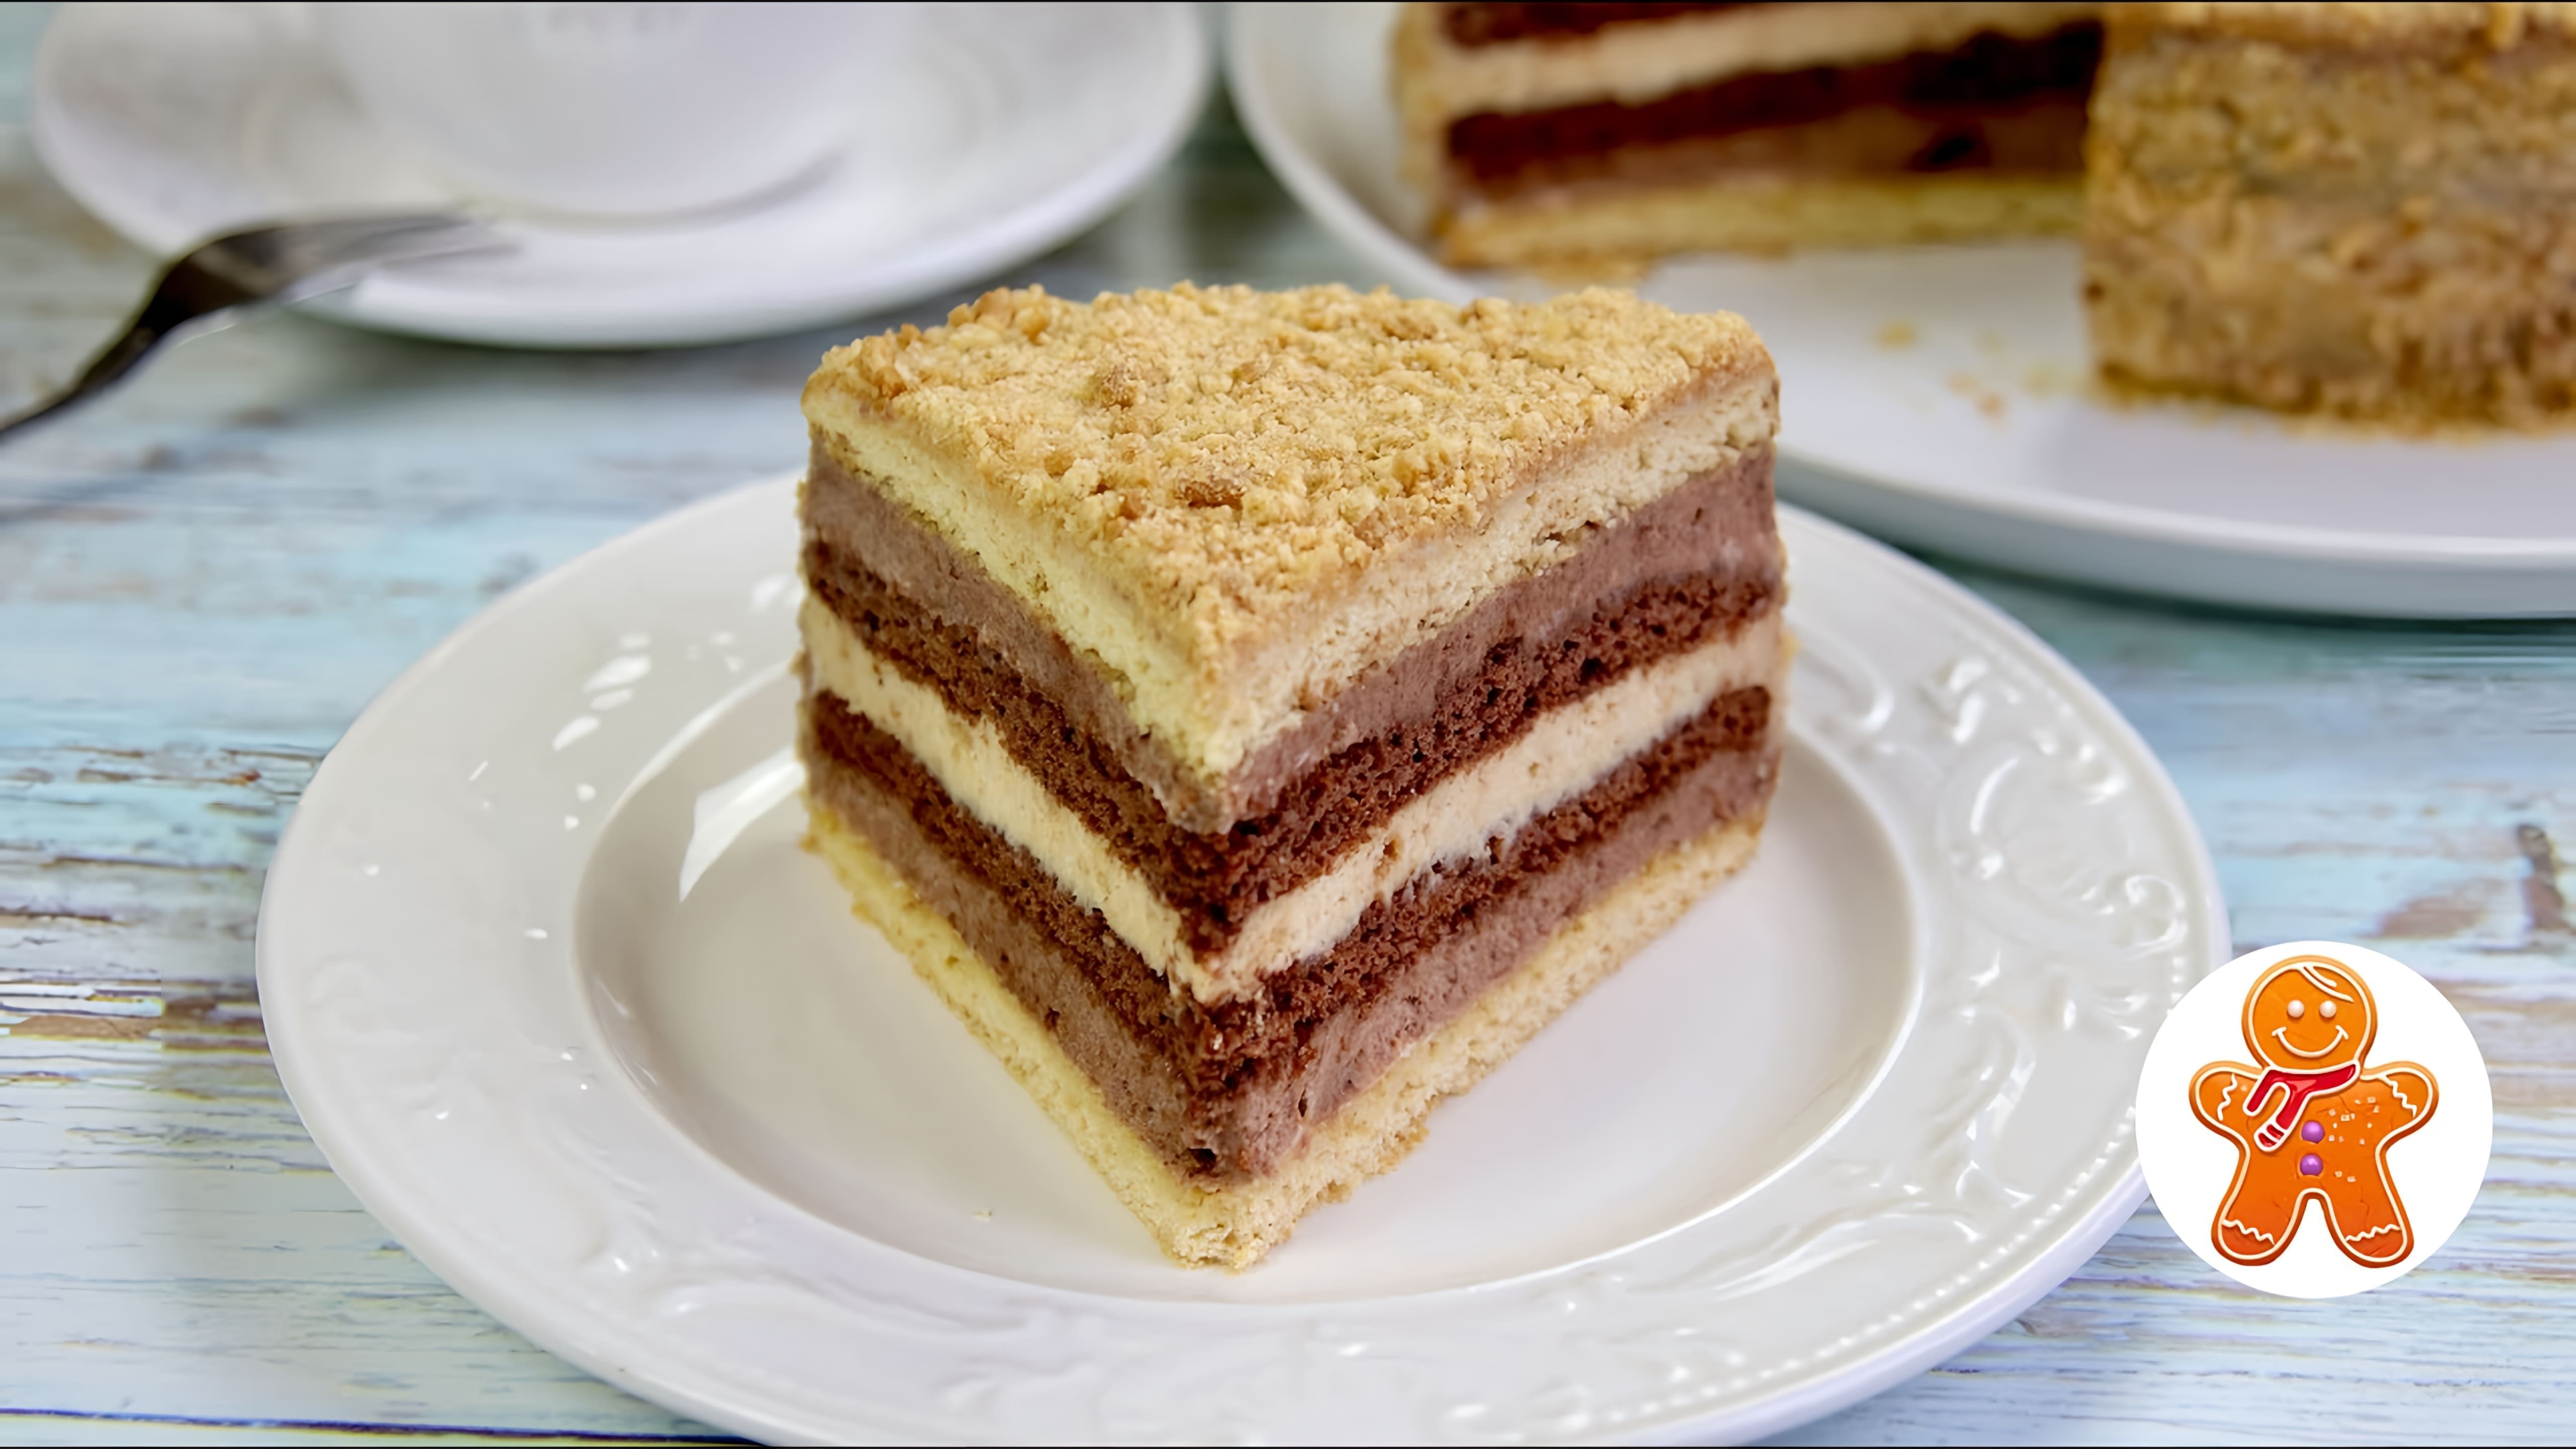 В этом видео демонстрируется рецепт приготовления оригинального домашнего торта с простейшим кремом и красивым разрезом